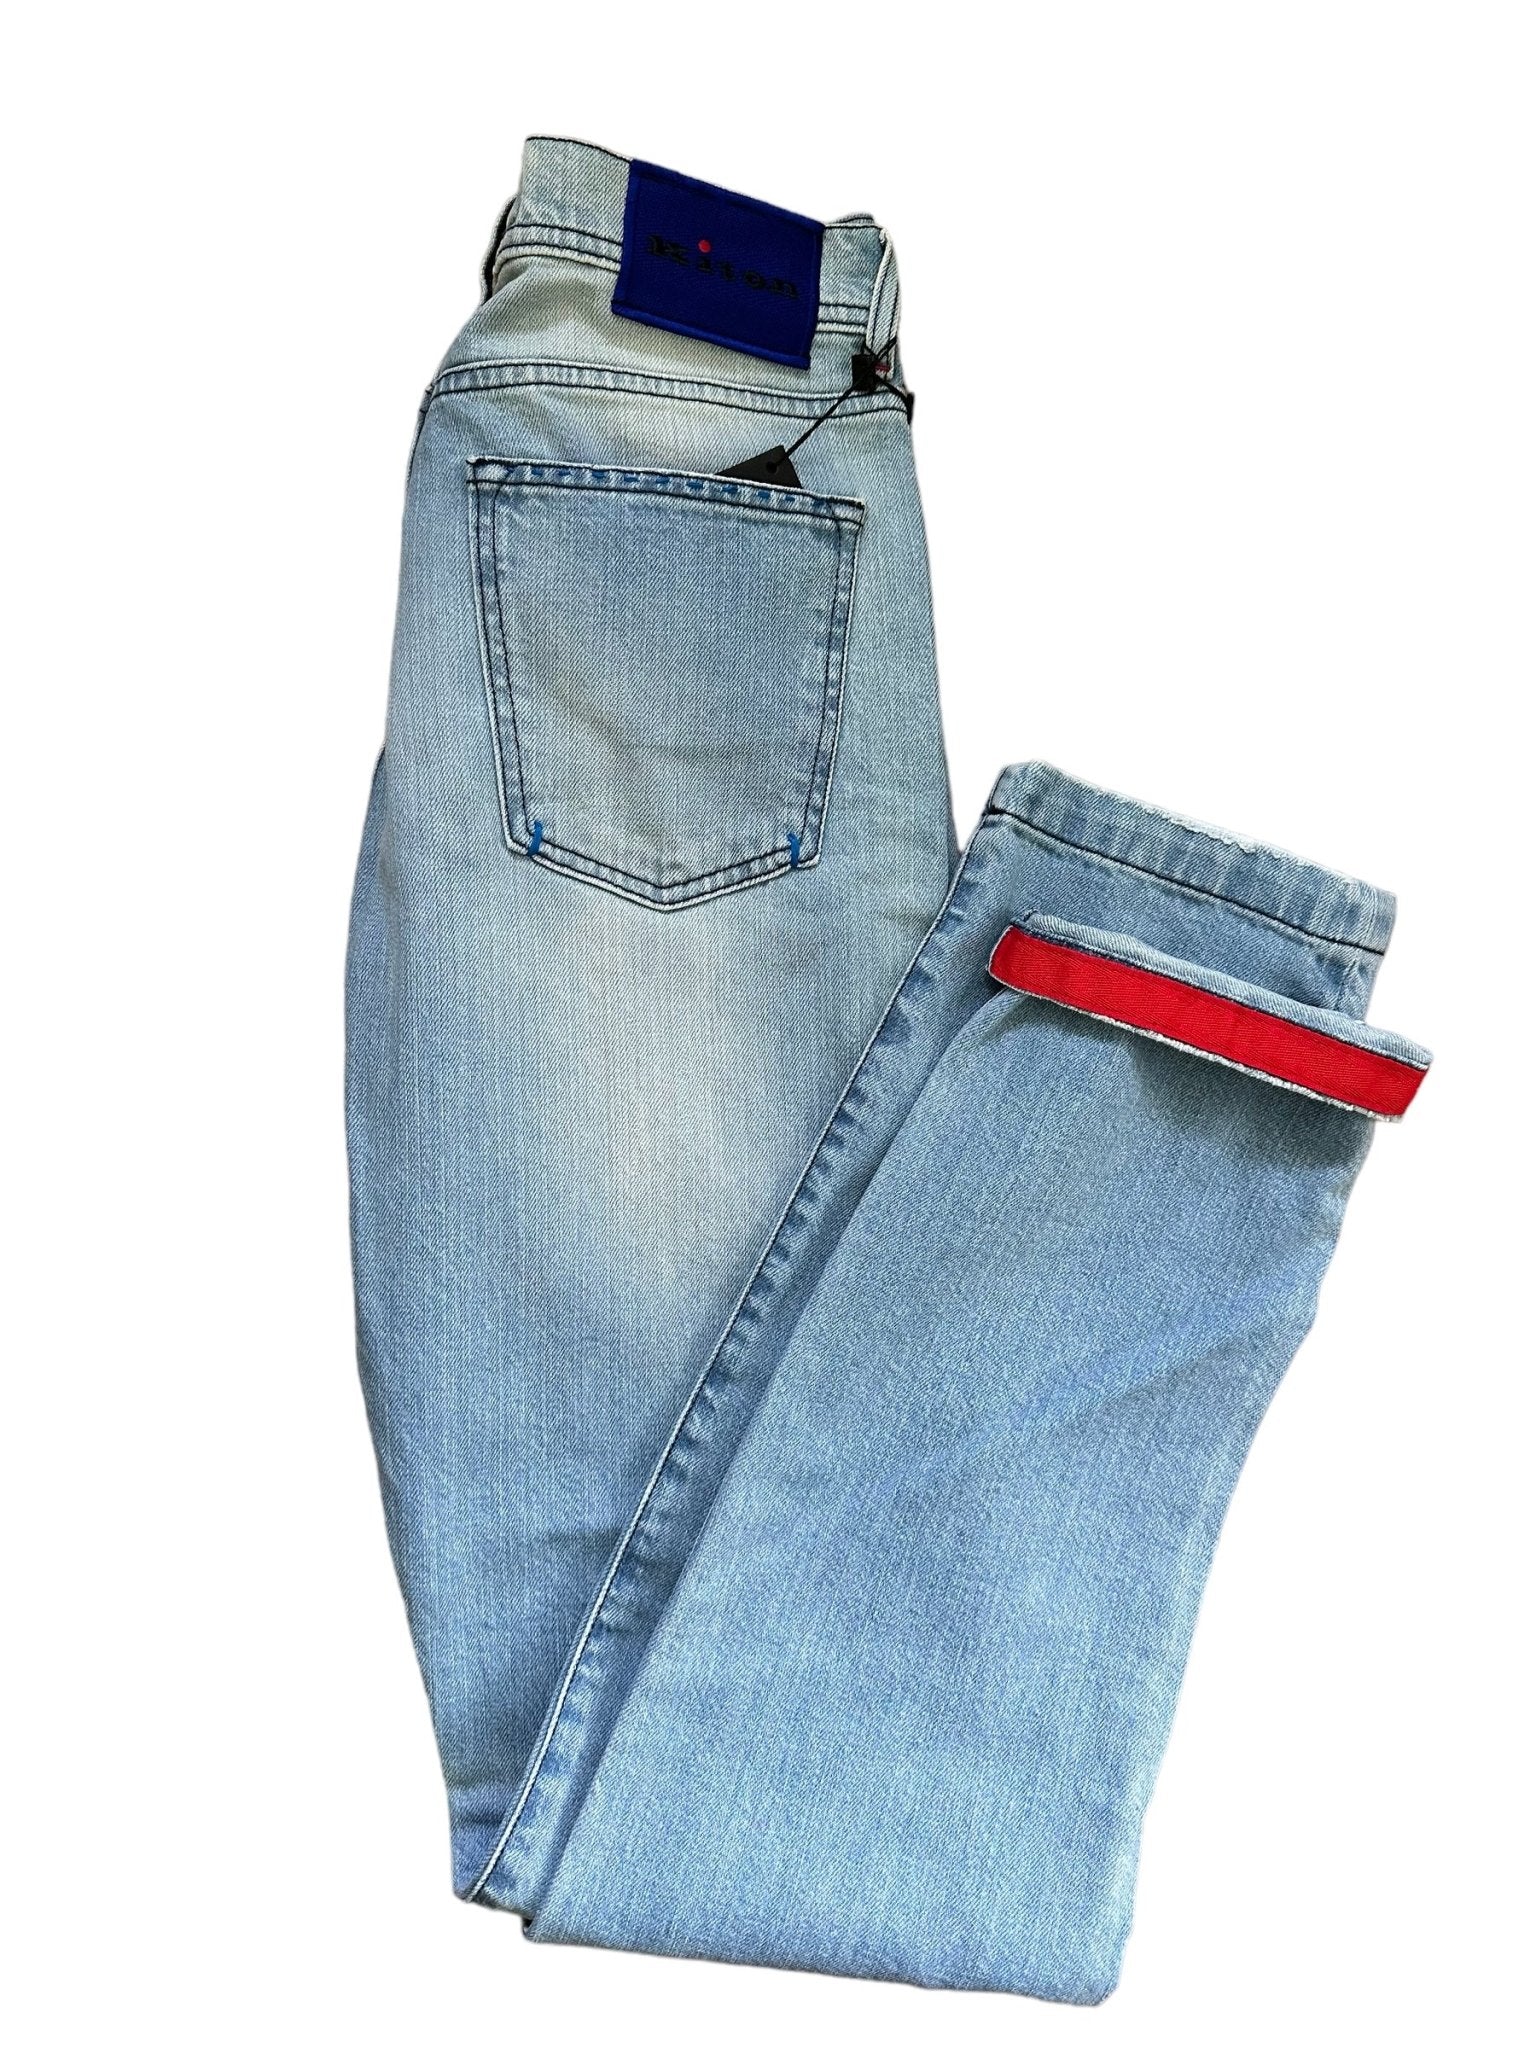 Kiton Jeans Slim washed - 24/7 Clothing